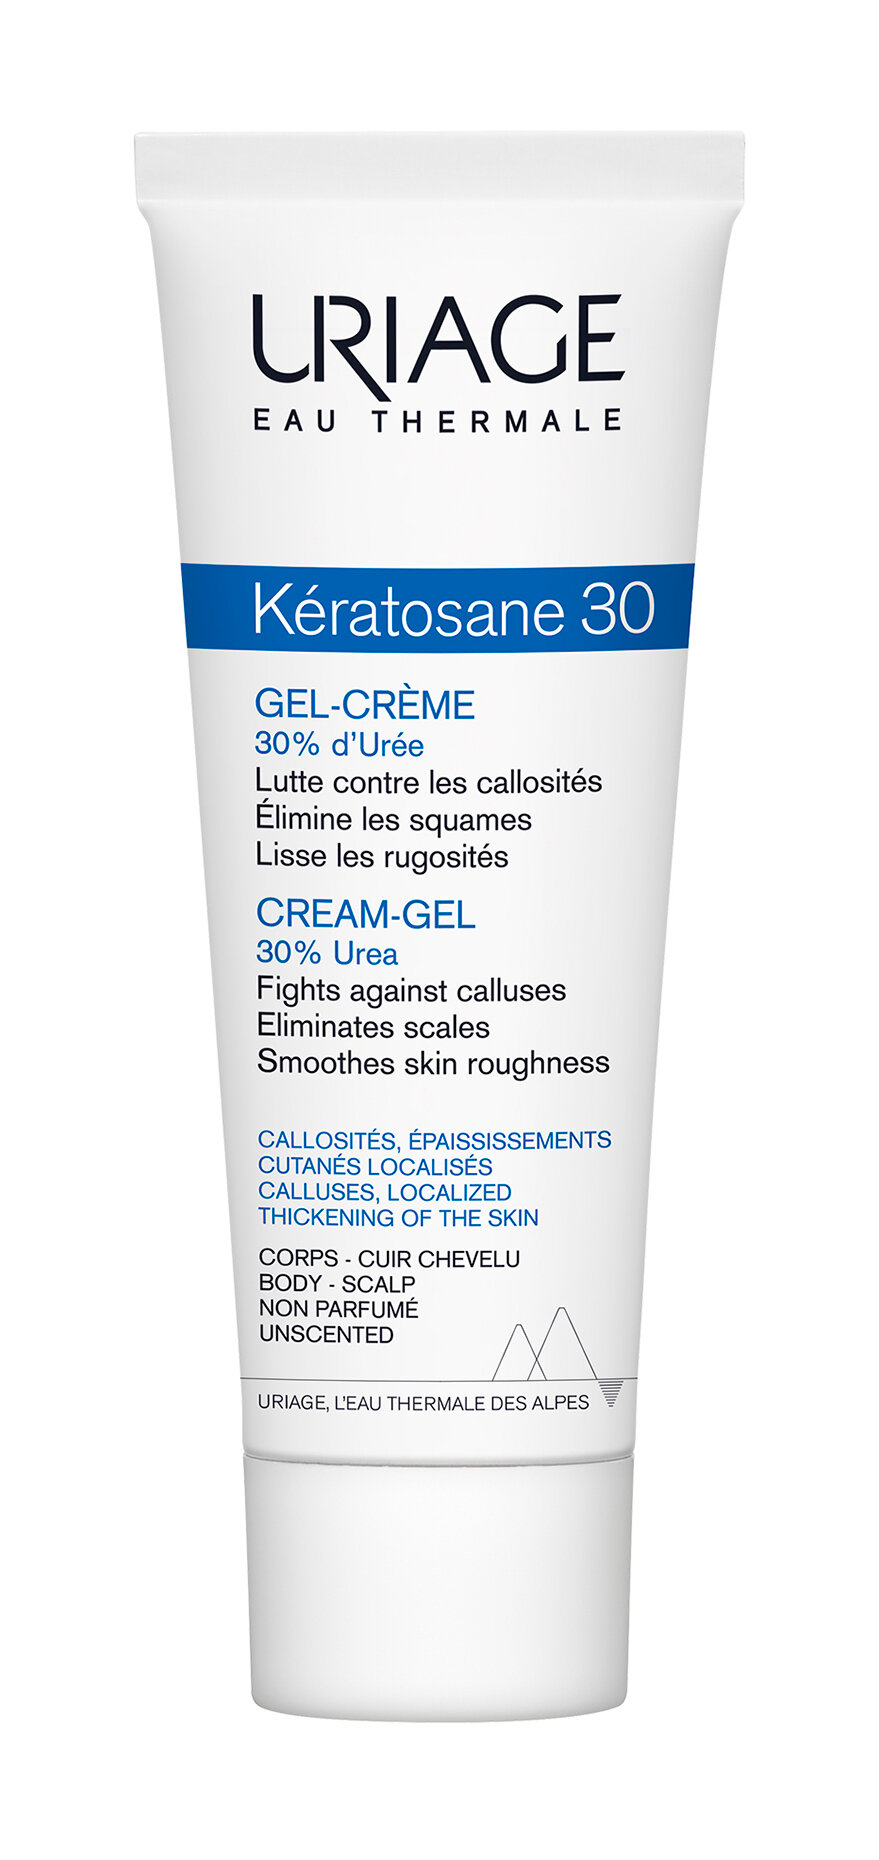 URIAGE Keratozane 30 Гель-крем для мозолистых образований и локализованных утолщений кожи, 75 мл